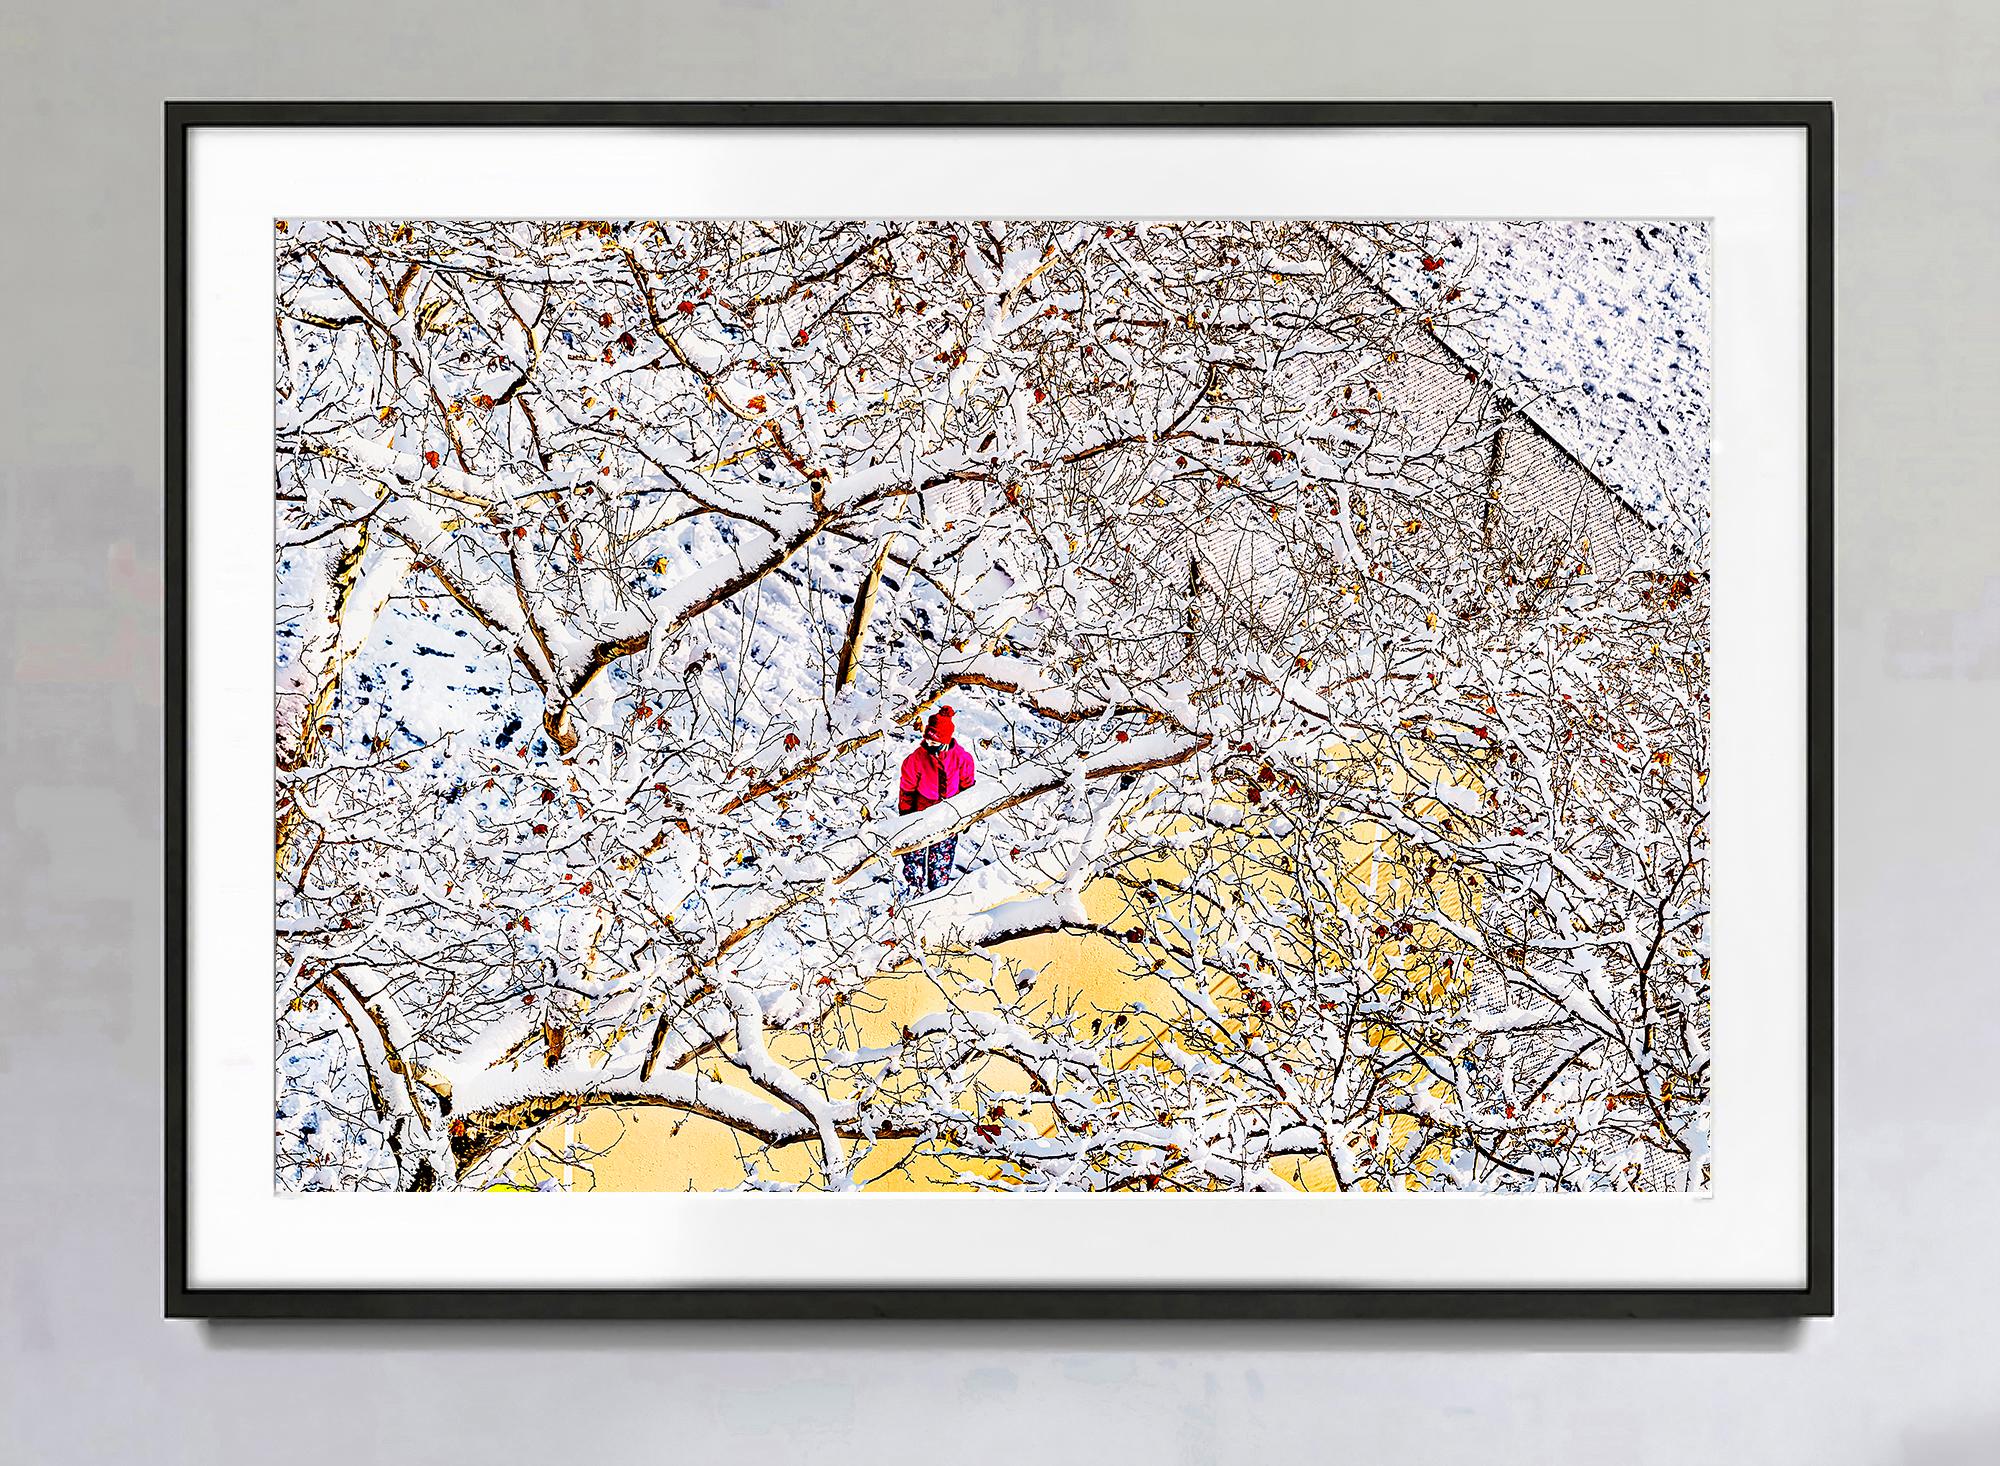 Eine abstrakte Winterszene mit einer einzelnen Figur in einem roten Mantel – Photograph von Mitchell Funk